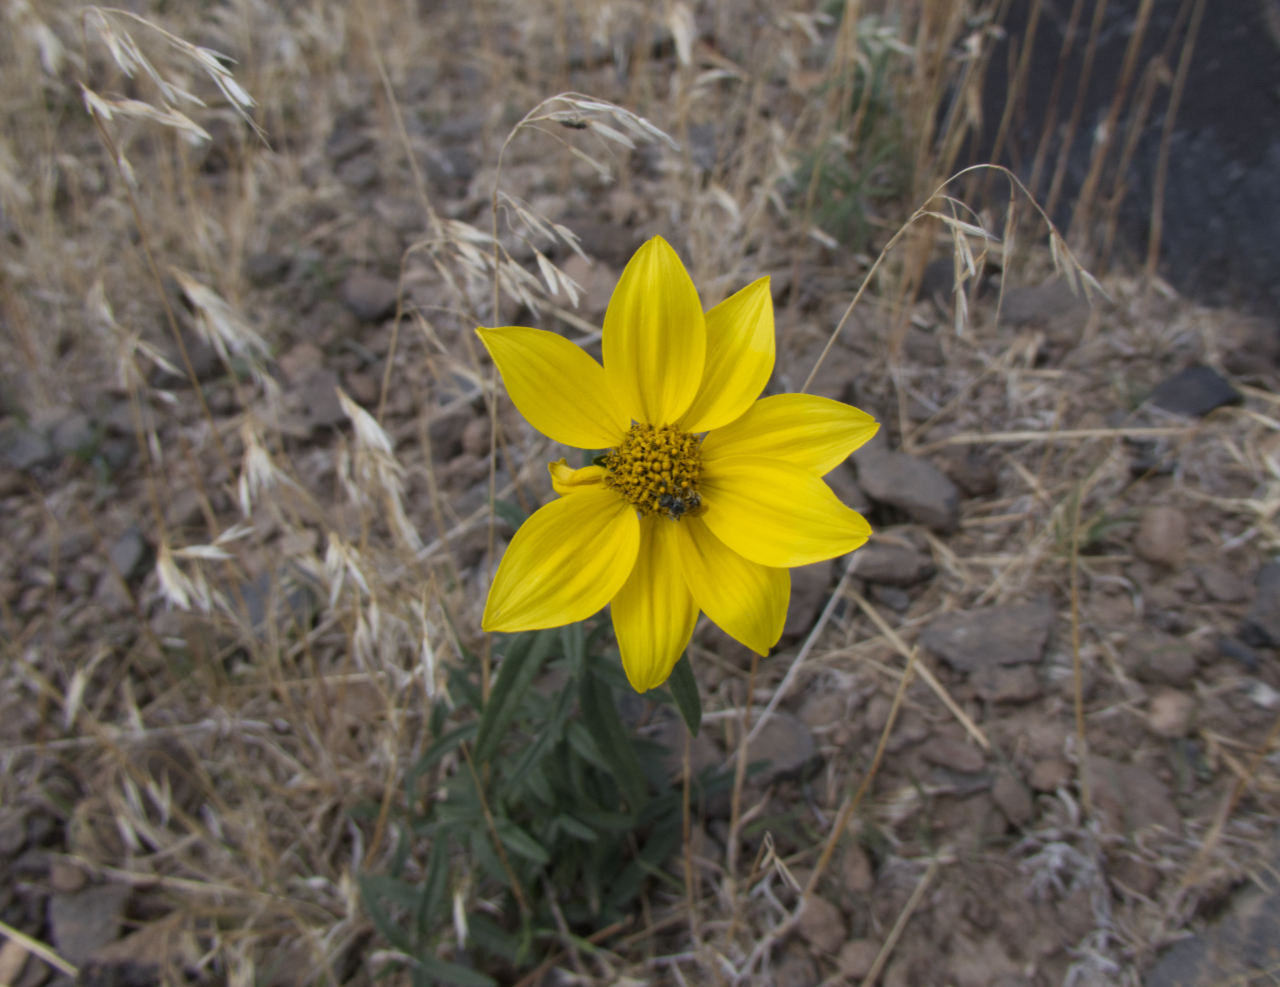 Nodding Dwarf Sunflower